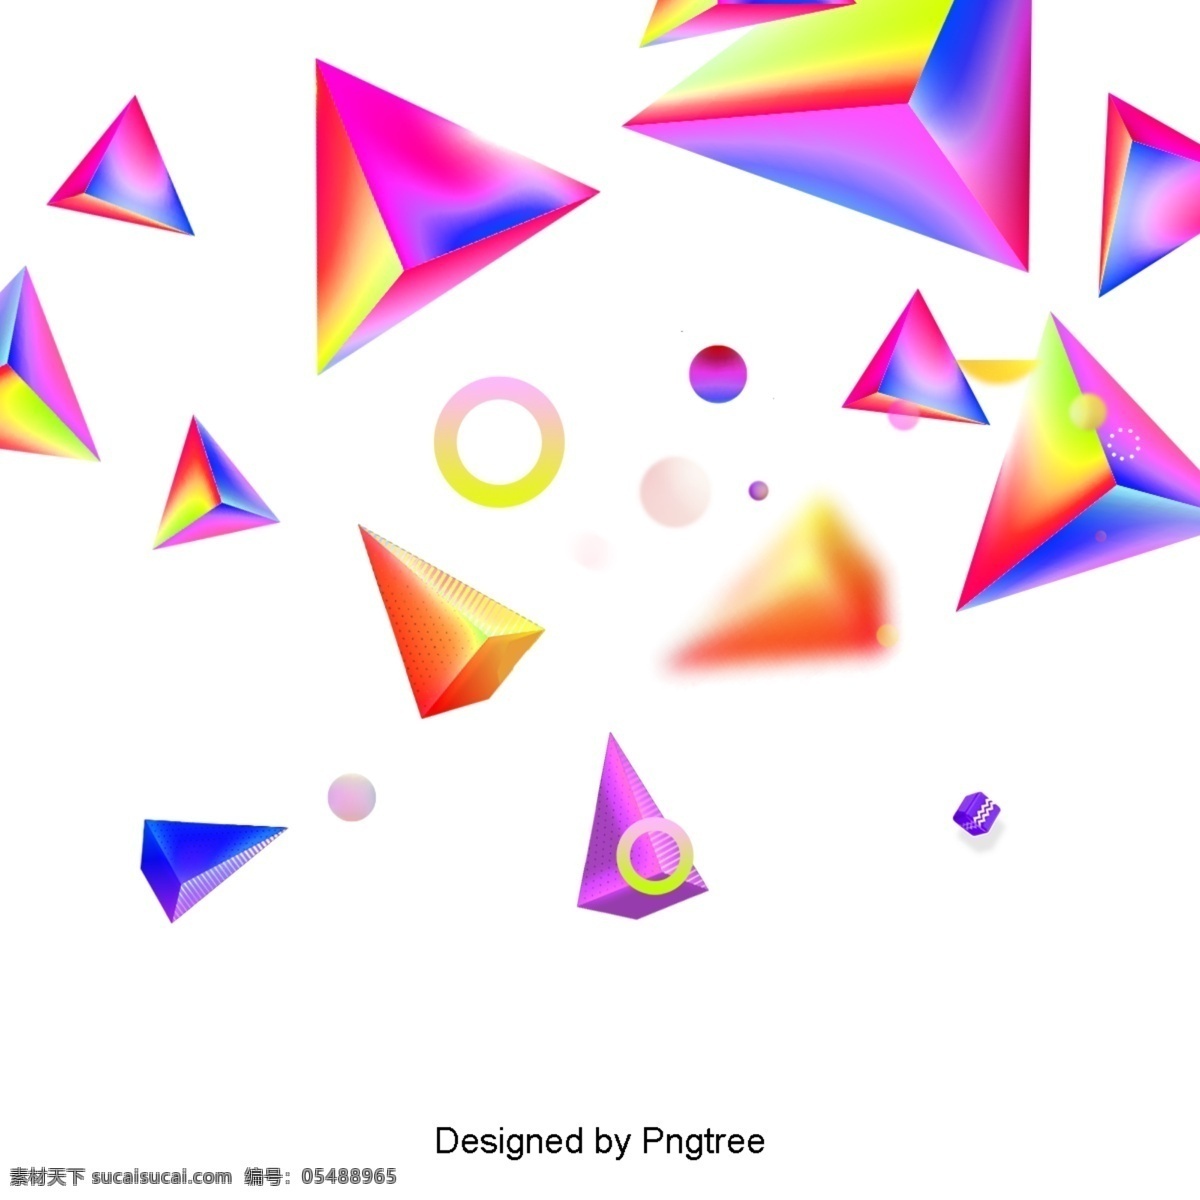 亮色 几何 平面 渐变 浮动 彩色 形状 圆形 三角形 抽象